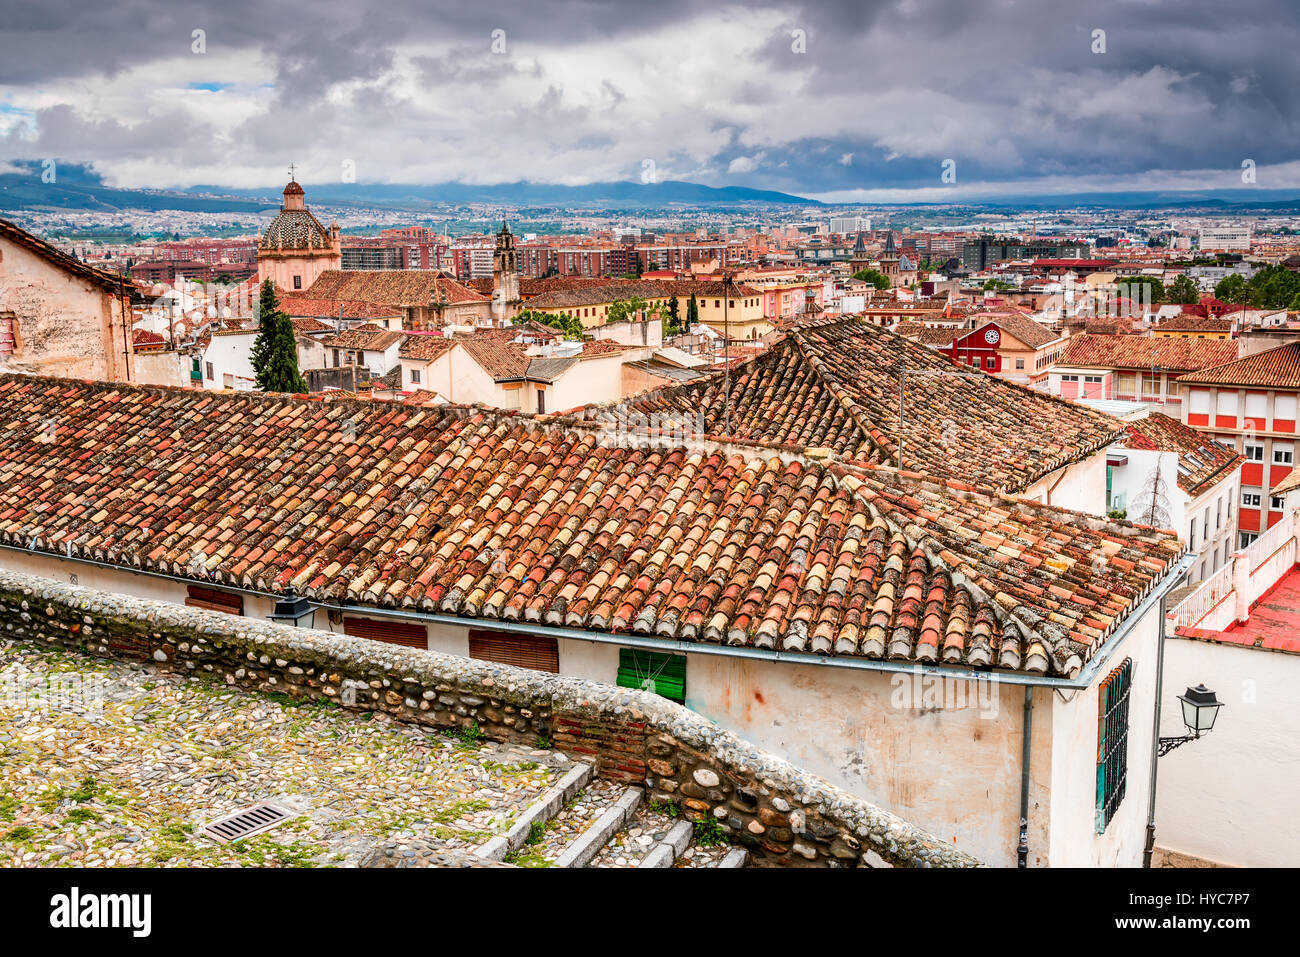 Granada, Spagna. medievale città moresco di Granada, Andalusia distintivo del paese spagnolo, penisola iberica. Foto Stock